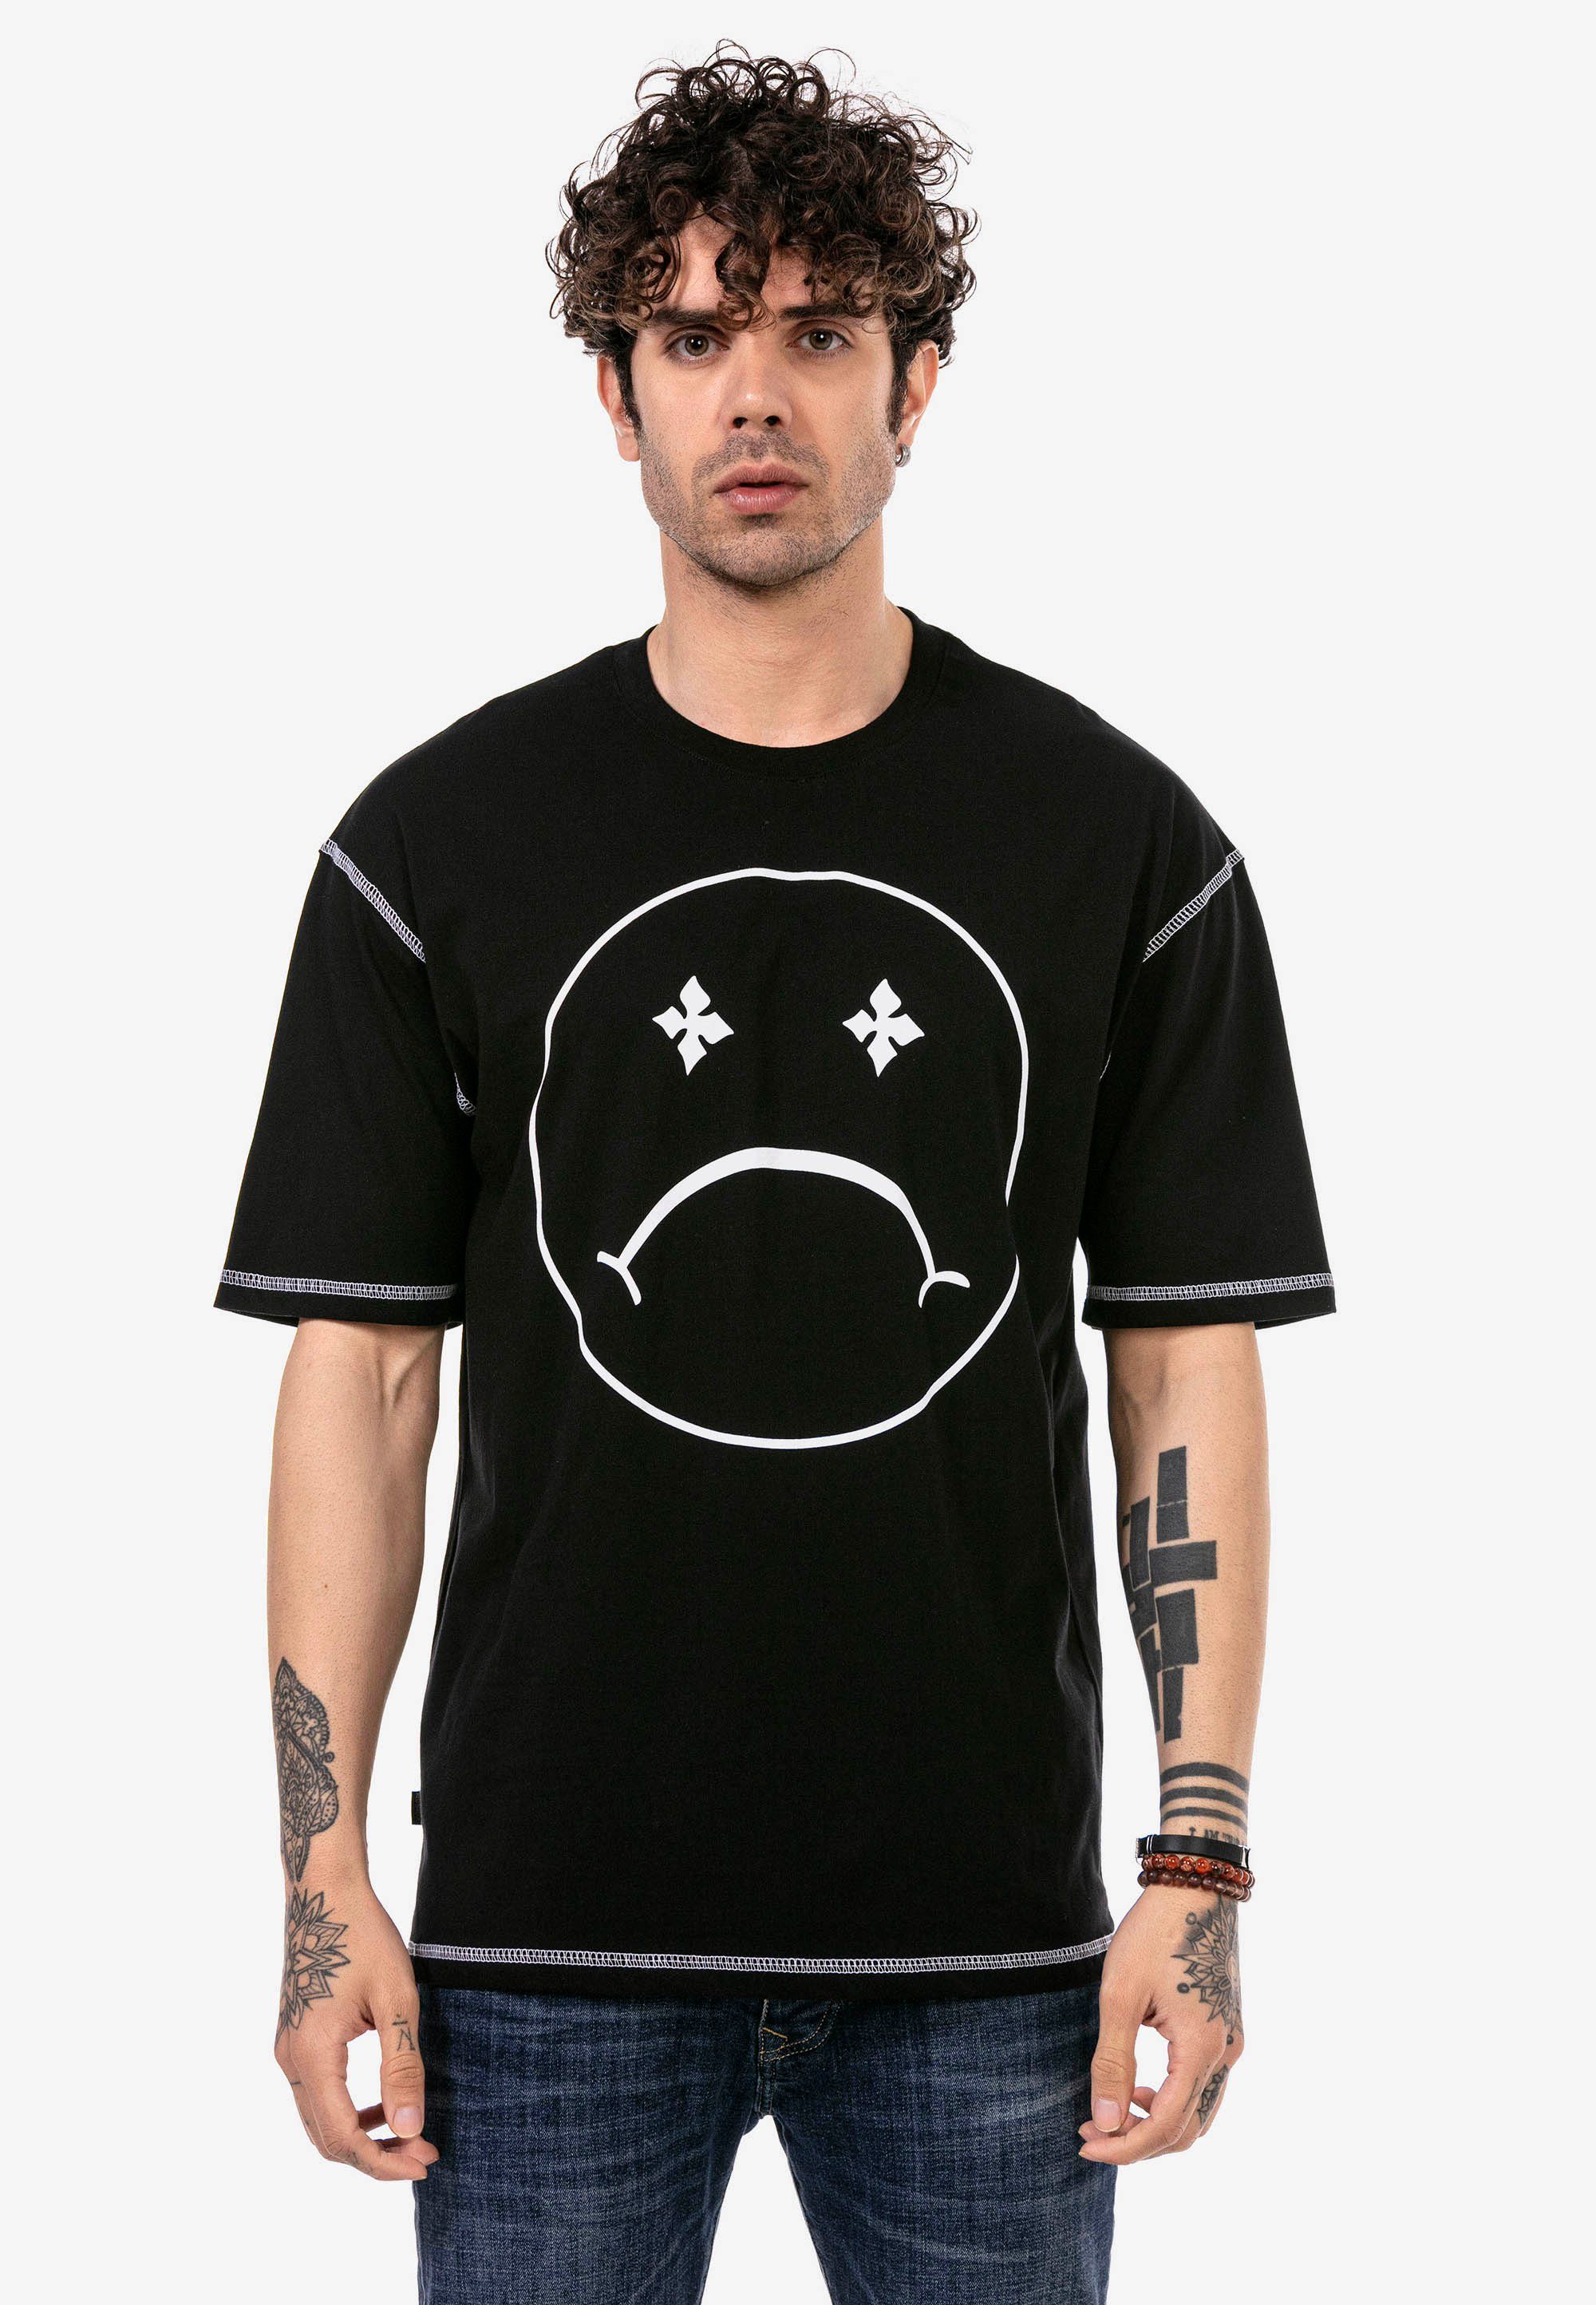 RedBridge T-Shirt Aberdeen mit modischem Sad Smiley-Frontprint schwarz